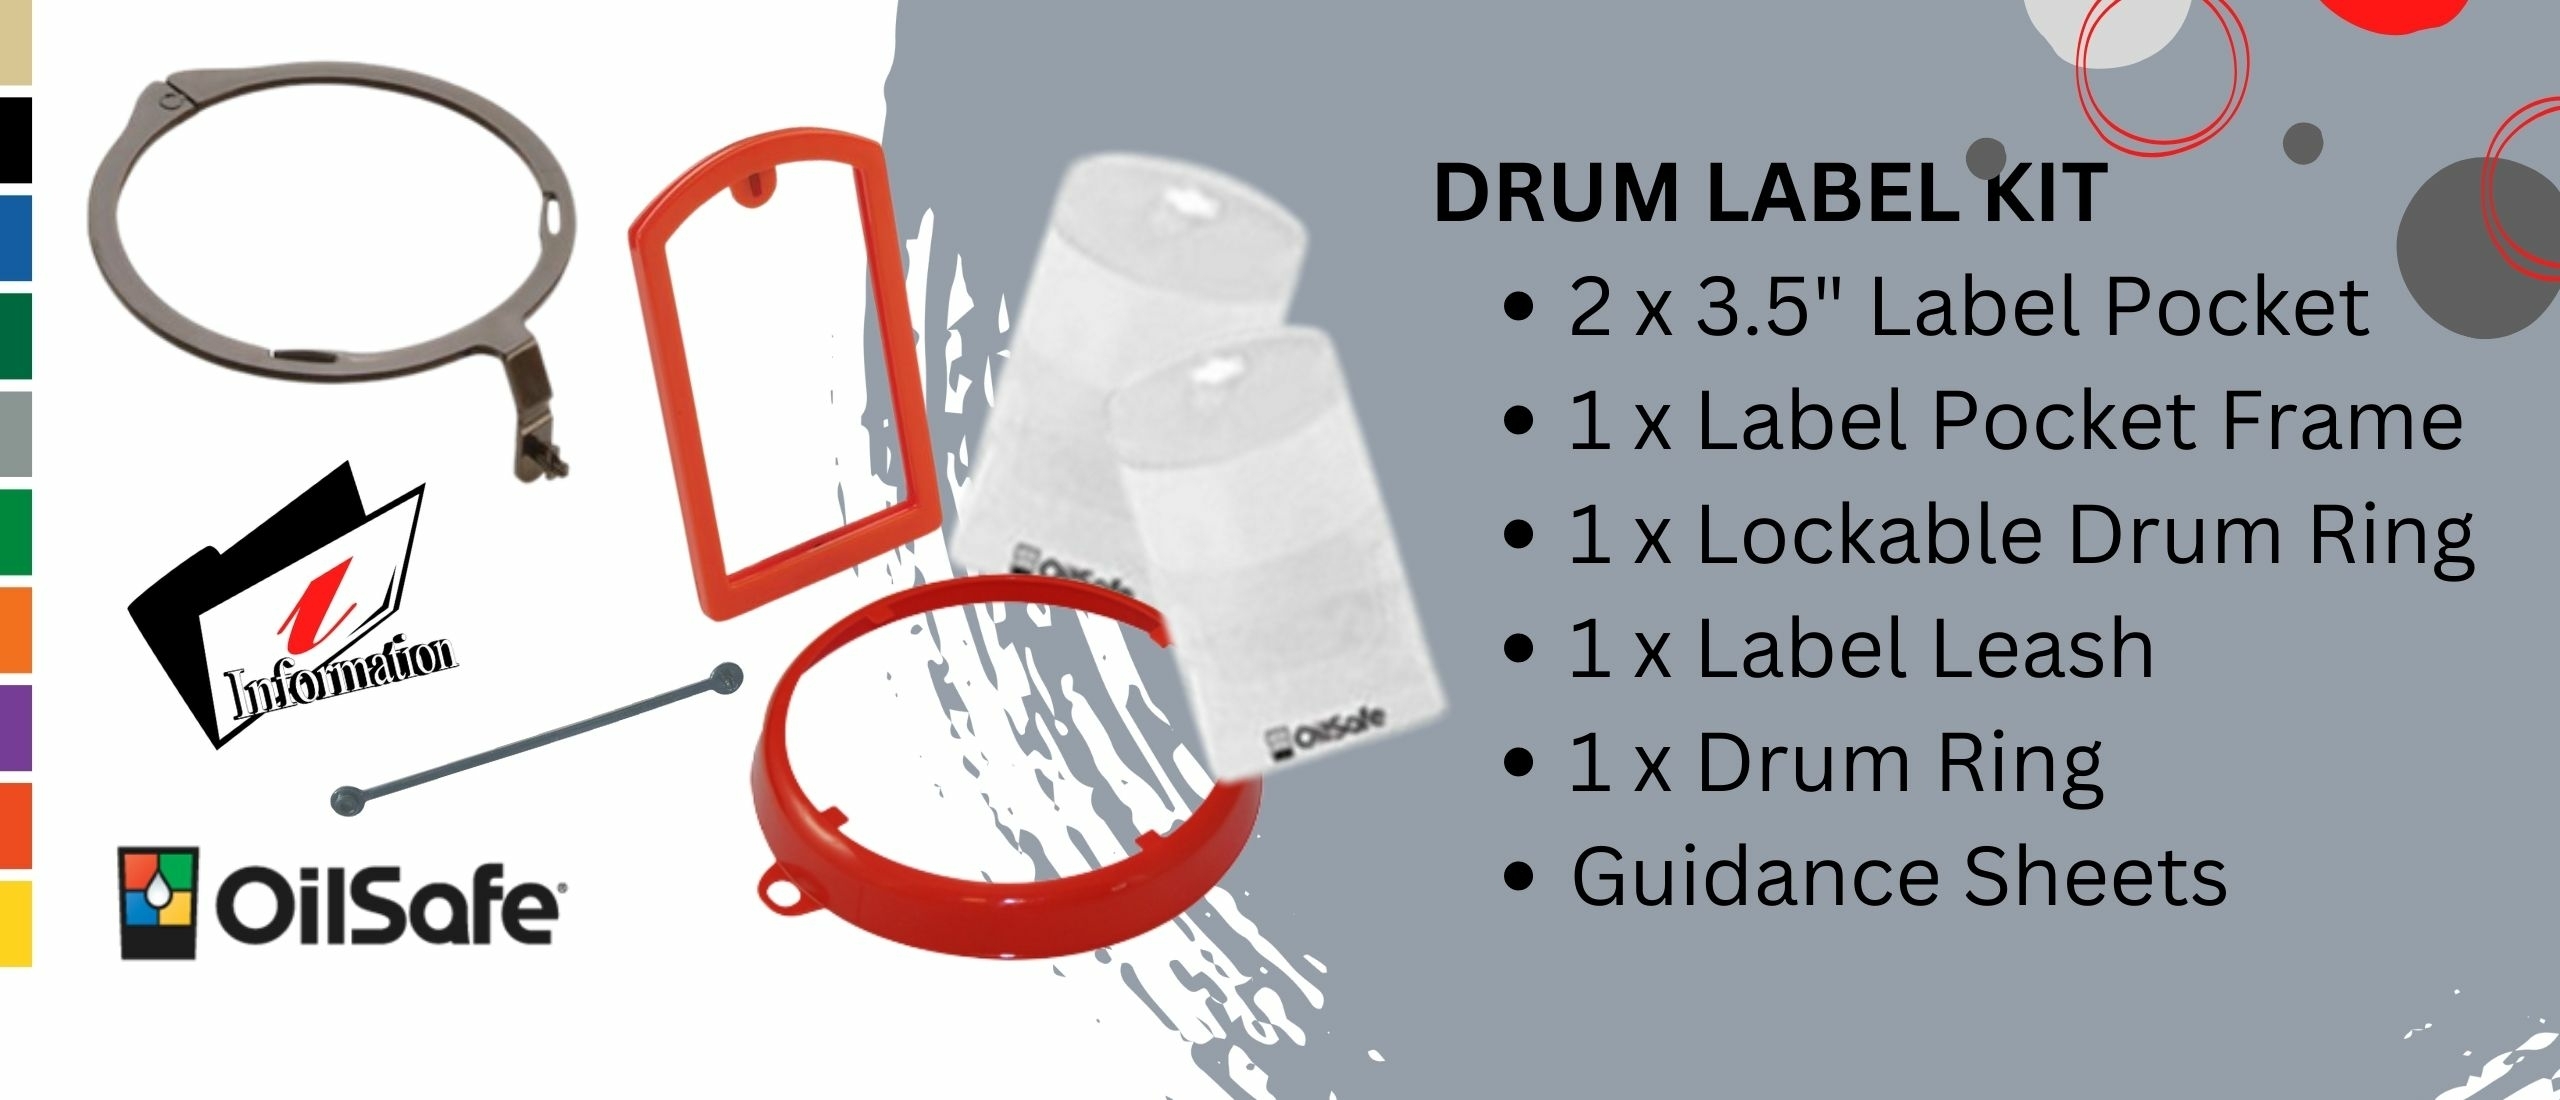 OilSafe drum label kit